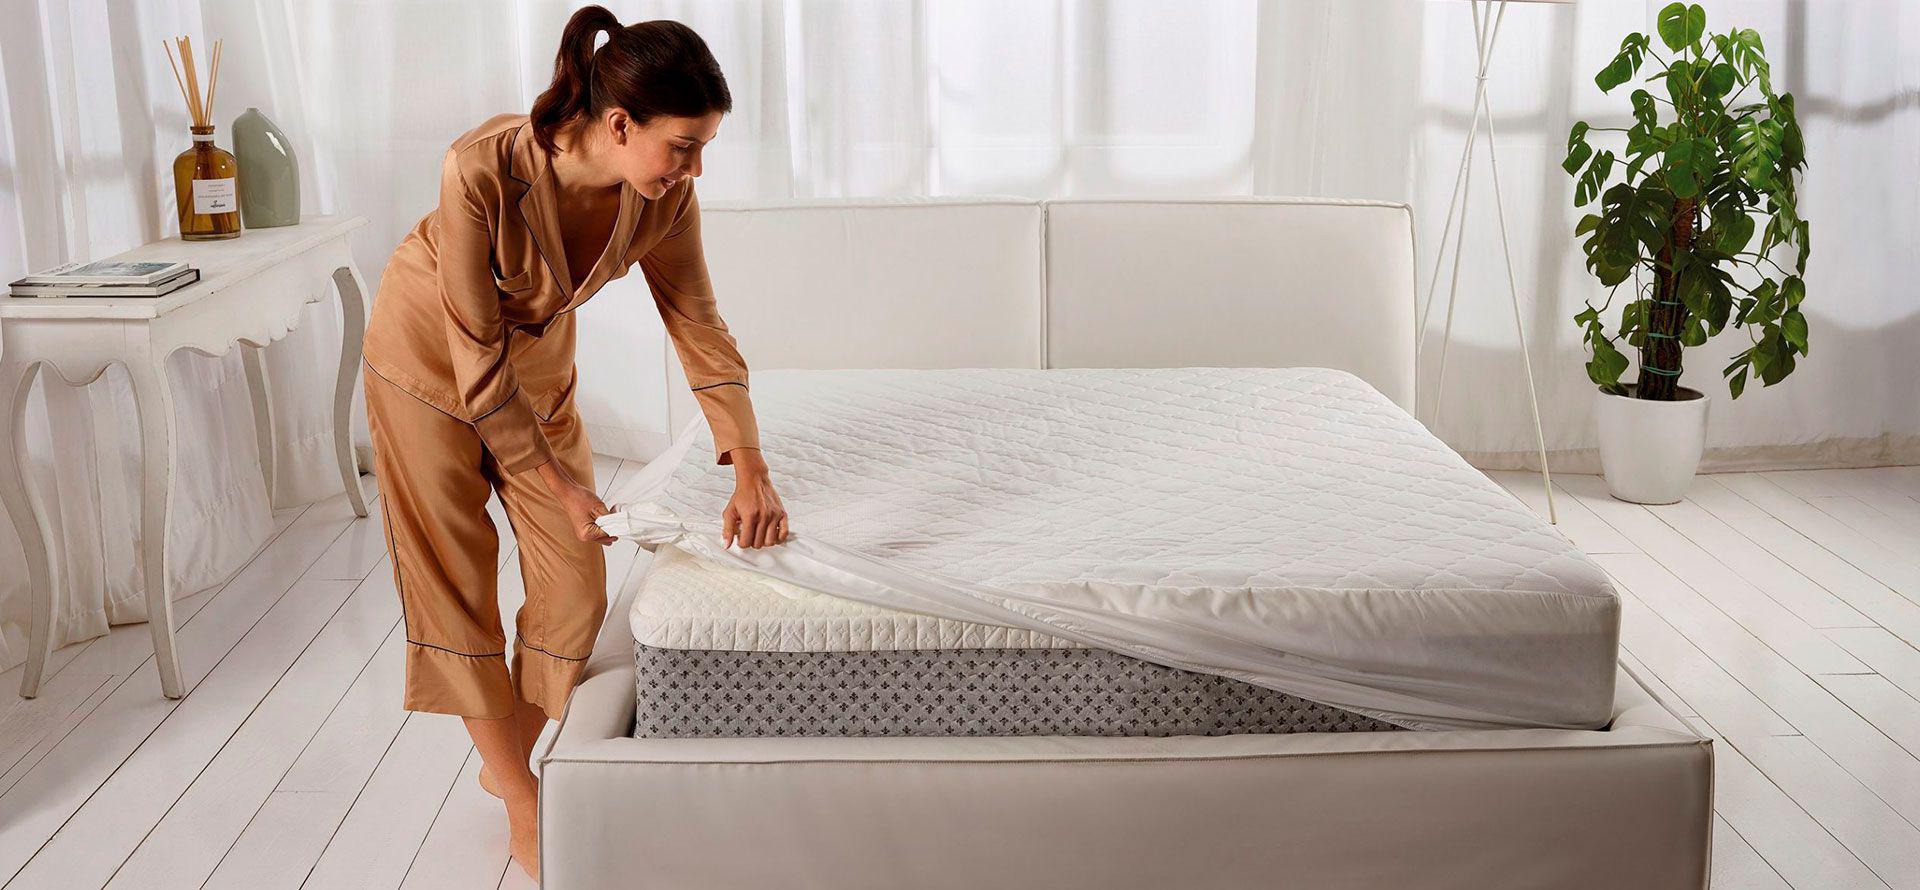 A woman changes her mattress.